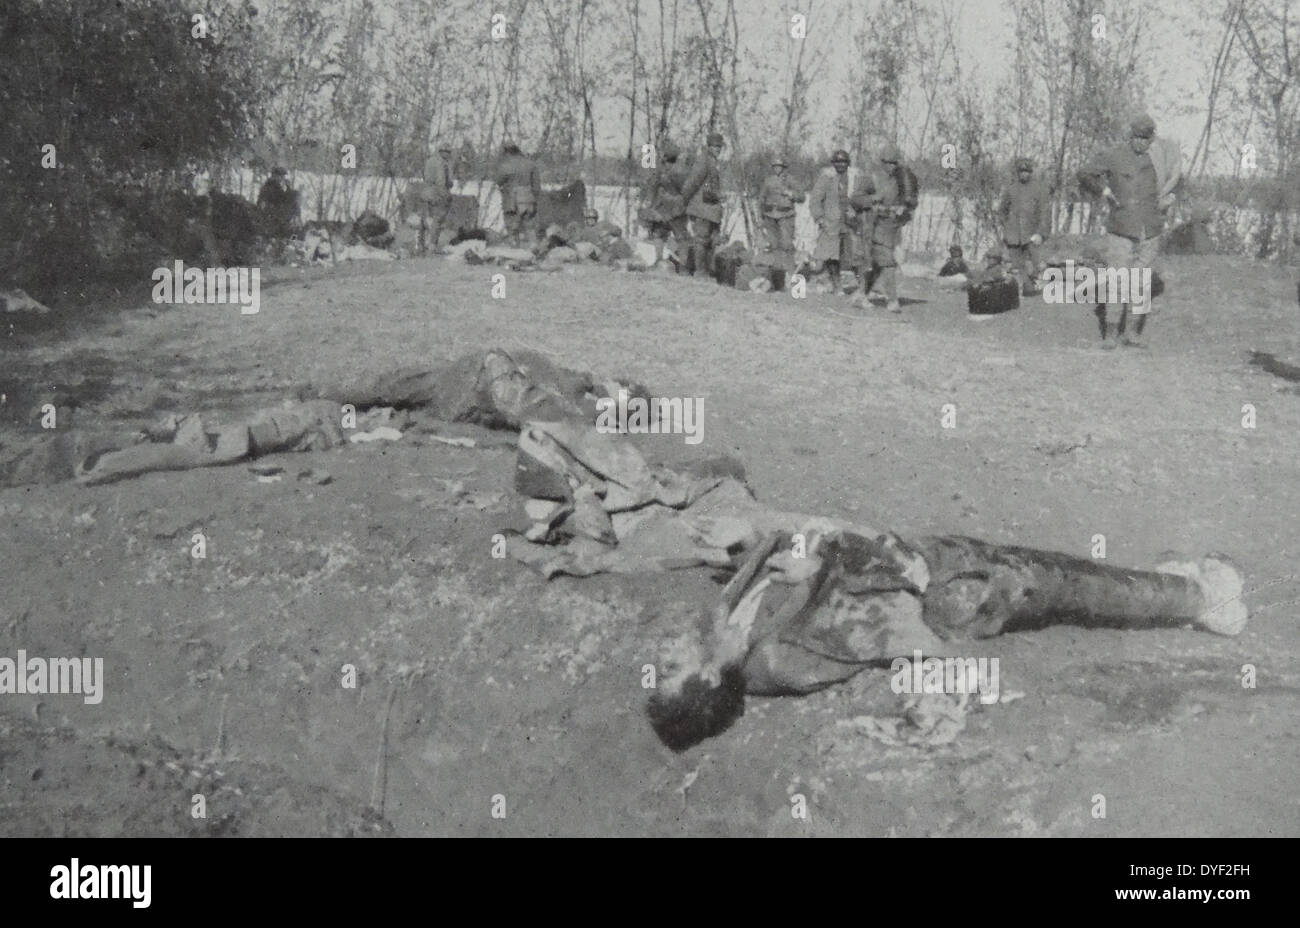 L esercito francese in Italia, passando per i corpi dei morti i soldati italiani impegnati nella prima guerra mondiale, 1917 Foto Stock